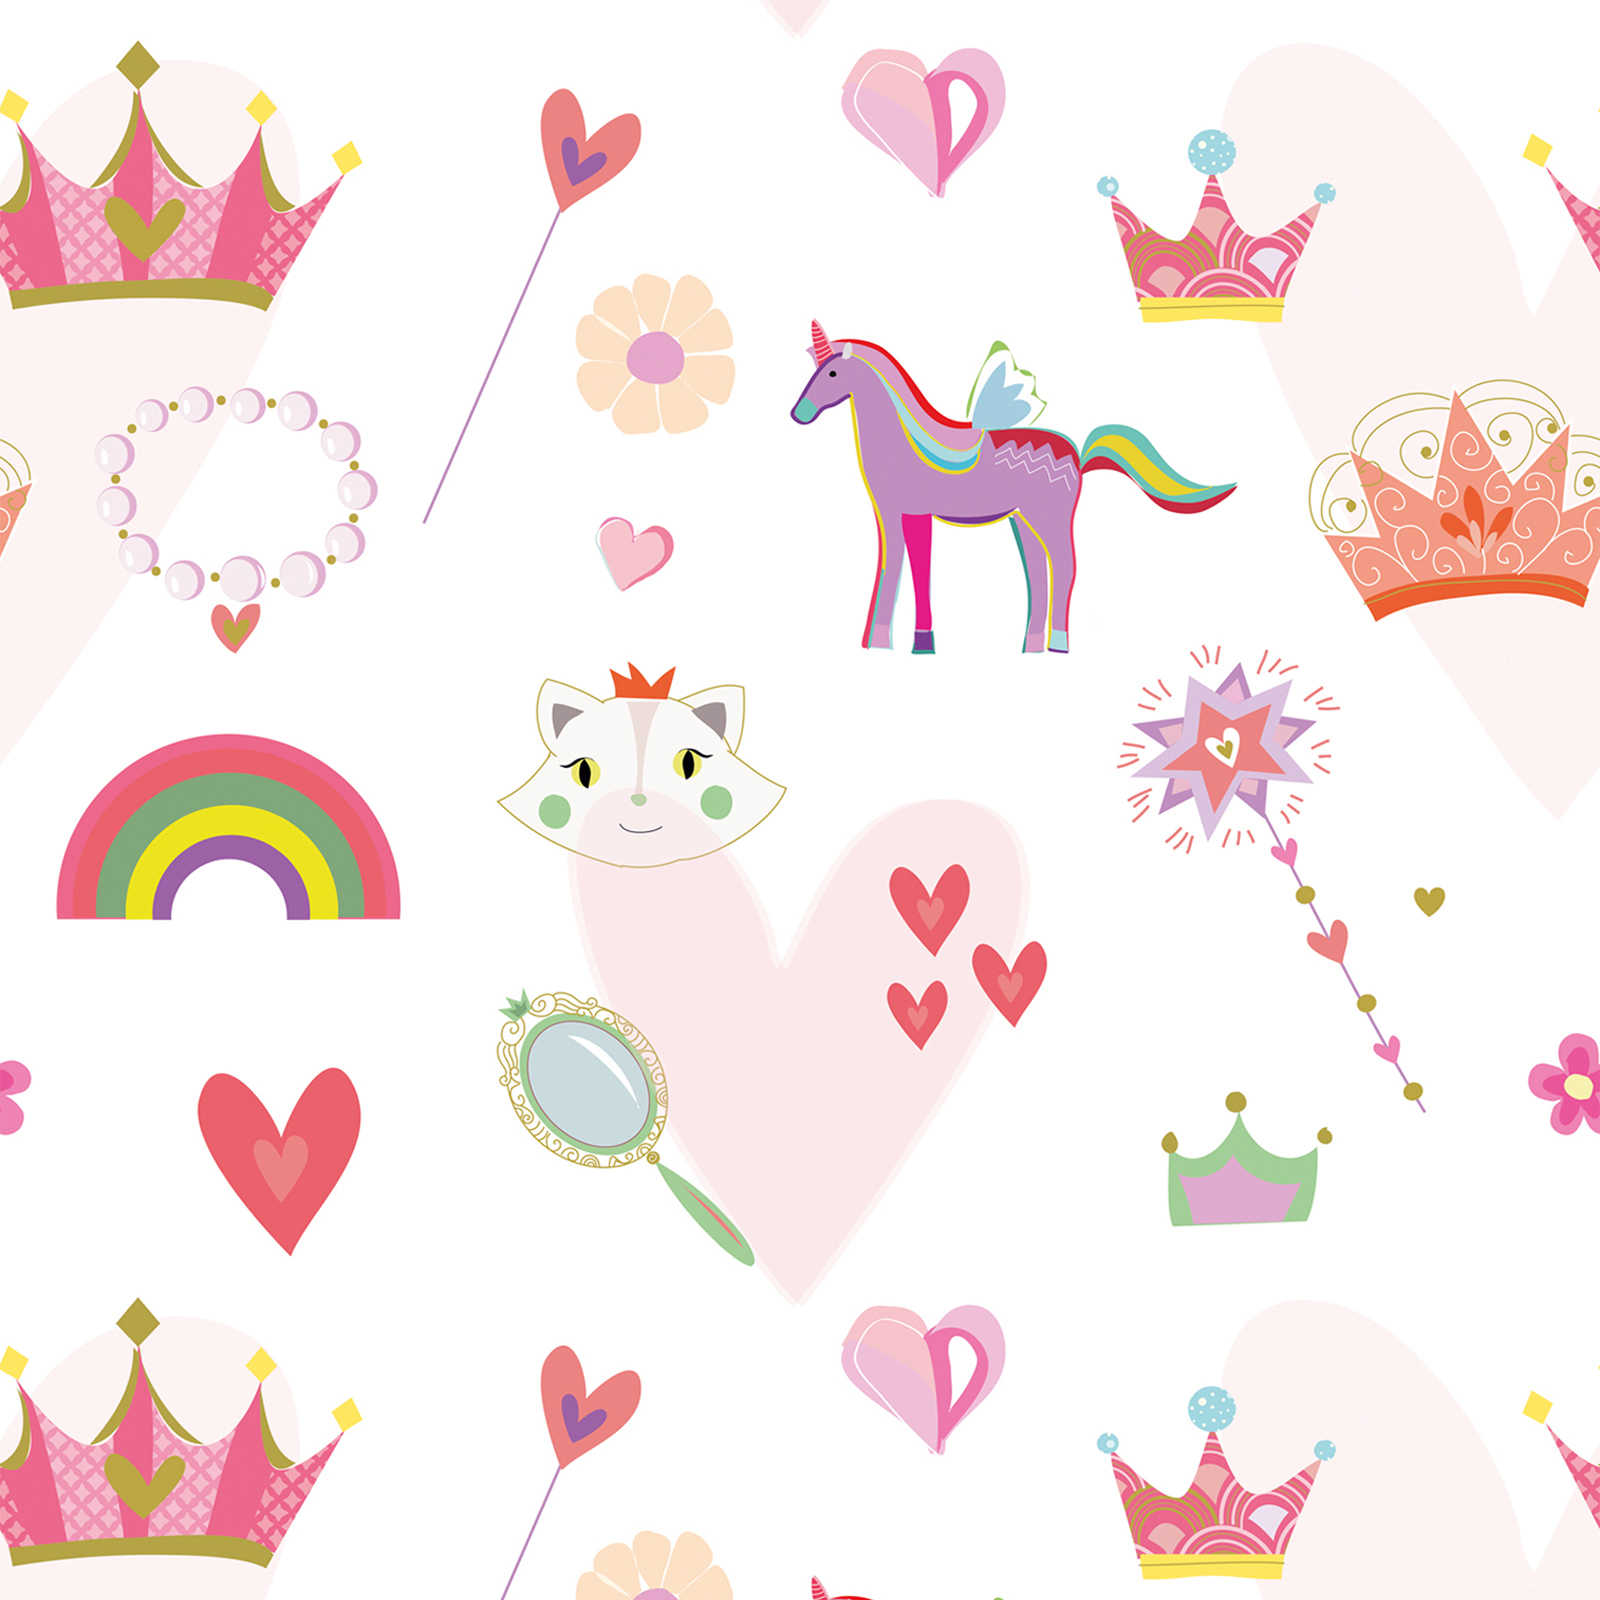 Kinderbehang in prinsessenstijl met harten en dieren - kleurrijk, roze, wit
